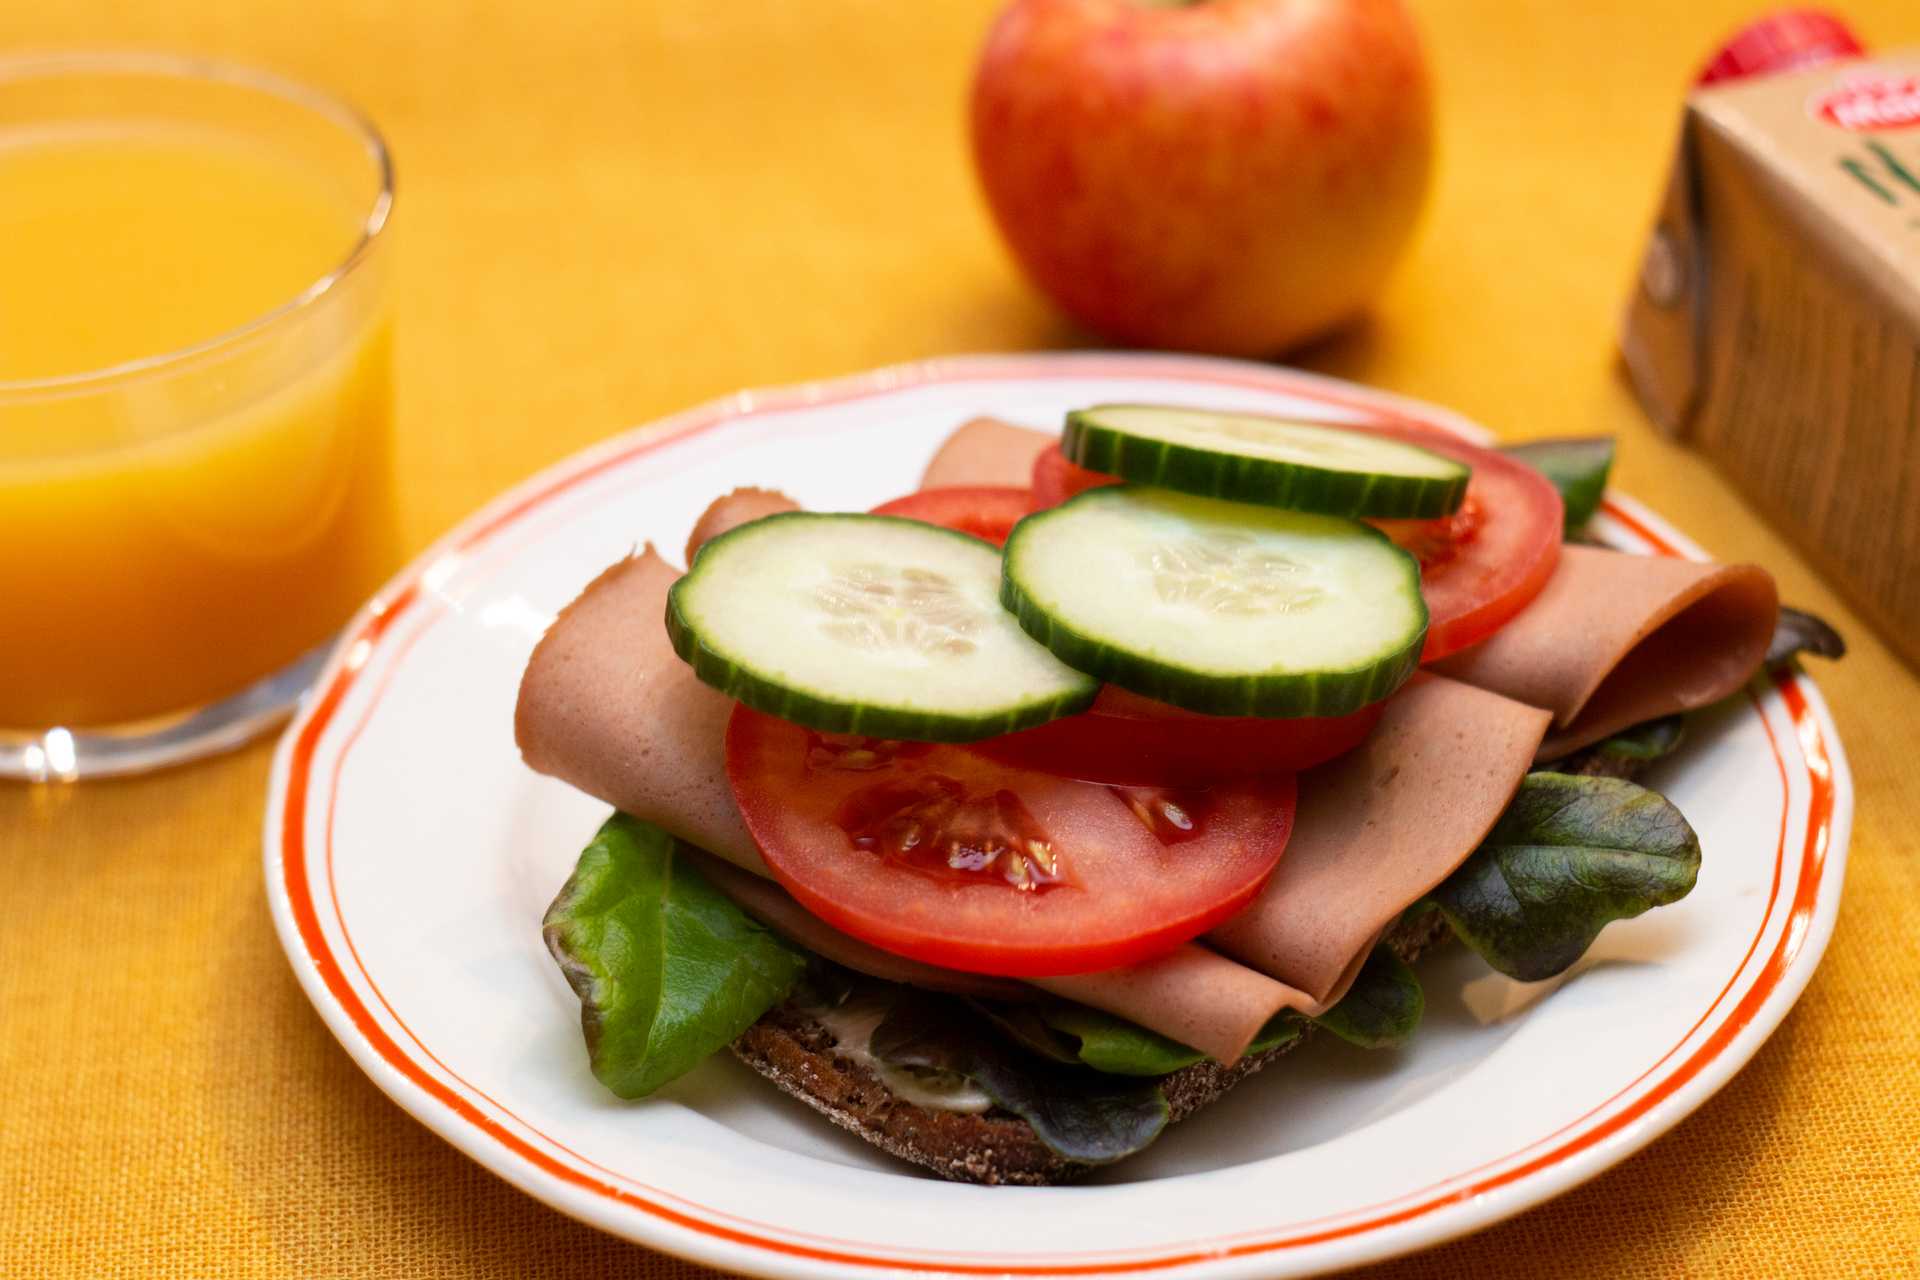 Kuvassa on ruisleipä, jonka päällä on salaattia, vegaanista leikkelettä, tomaattia ja kurkkua. Leivän takana on omena ja vieressä lasillisen appelsiinimehua.